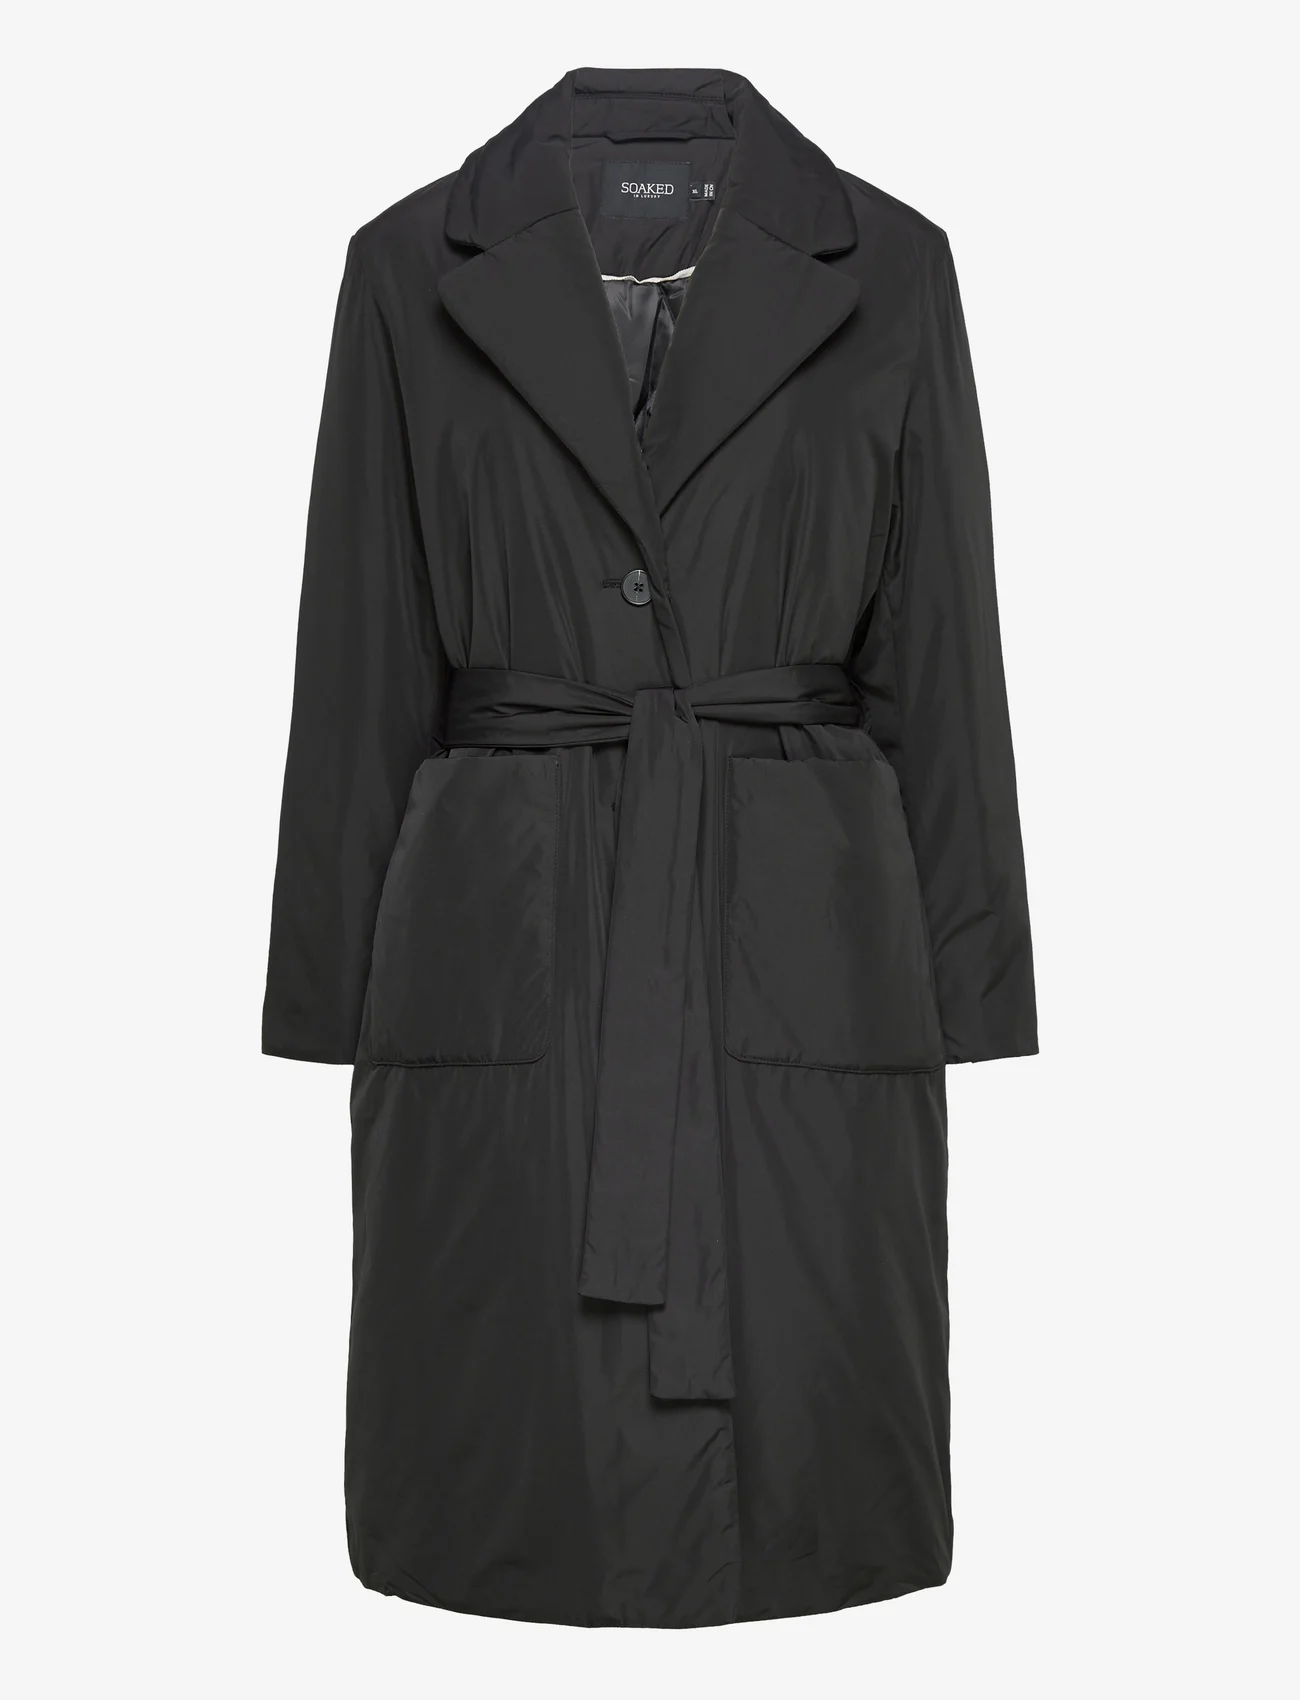 Soaked in Luxury - SLPanda Coat - winter jackets - black - 0